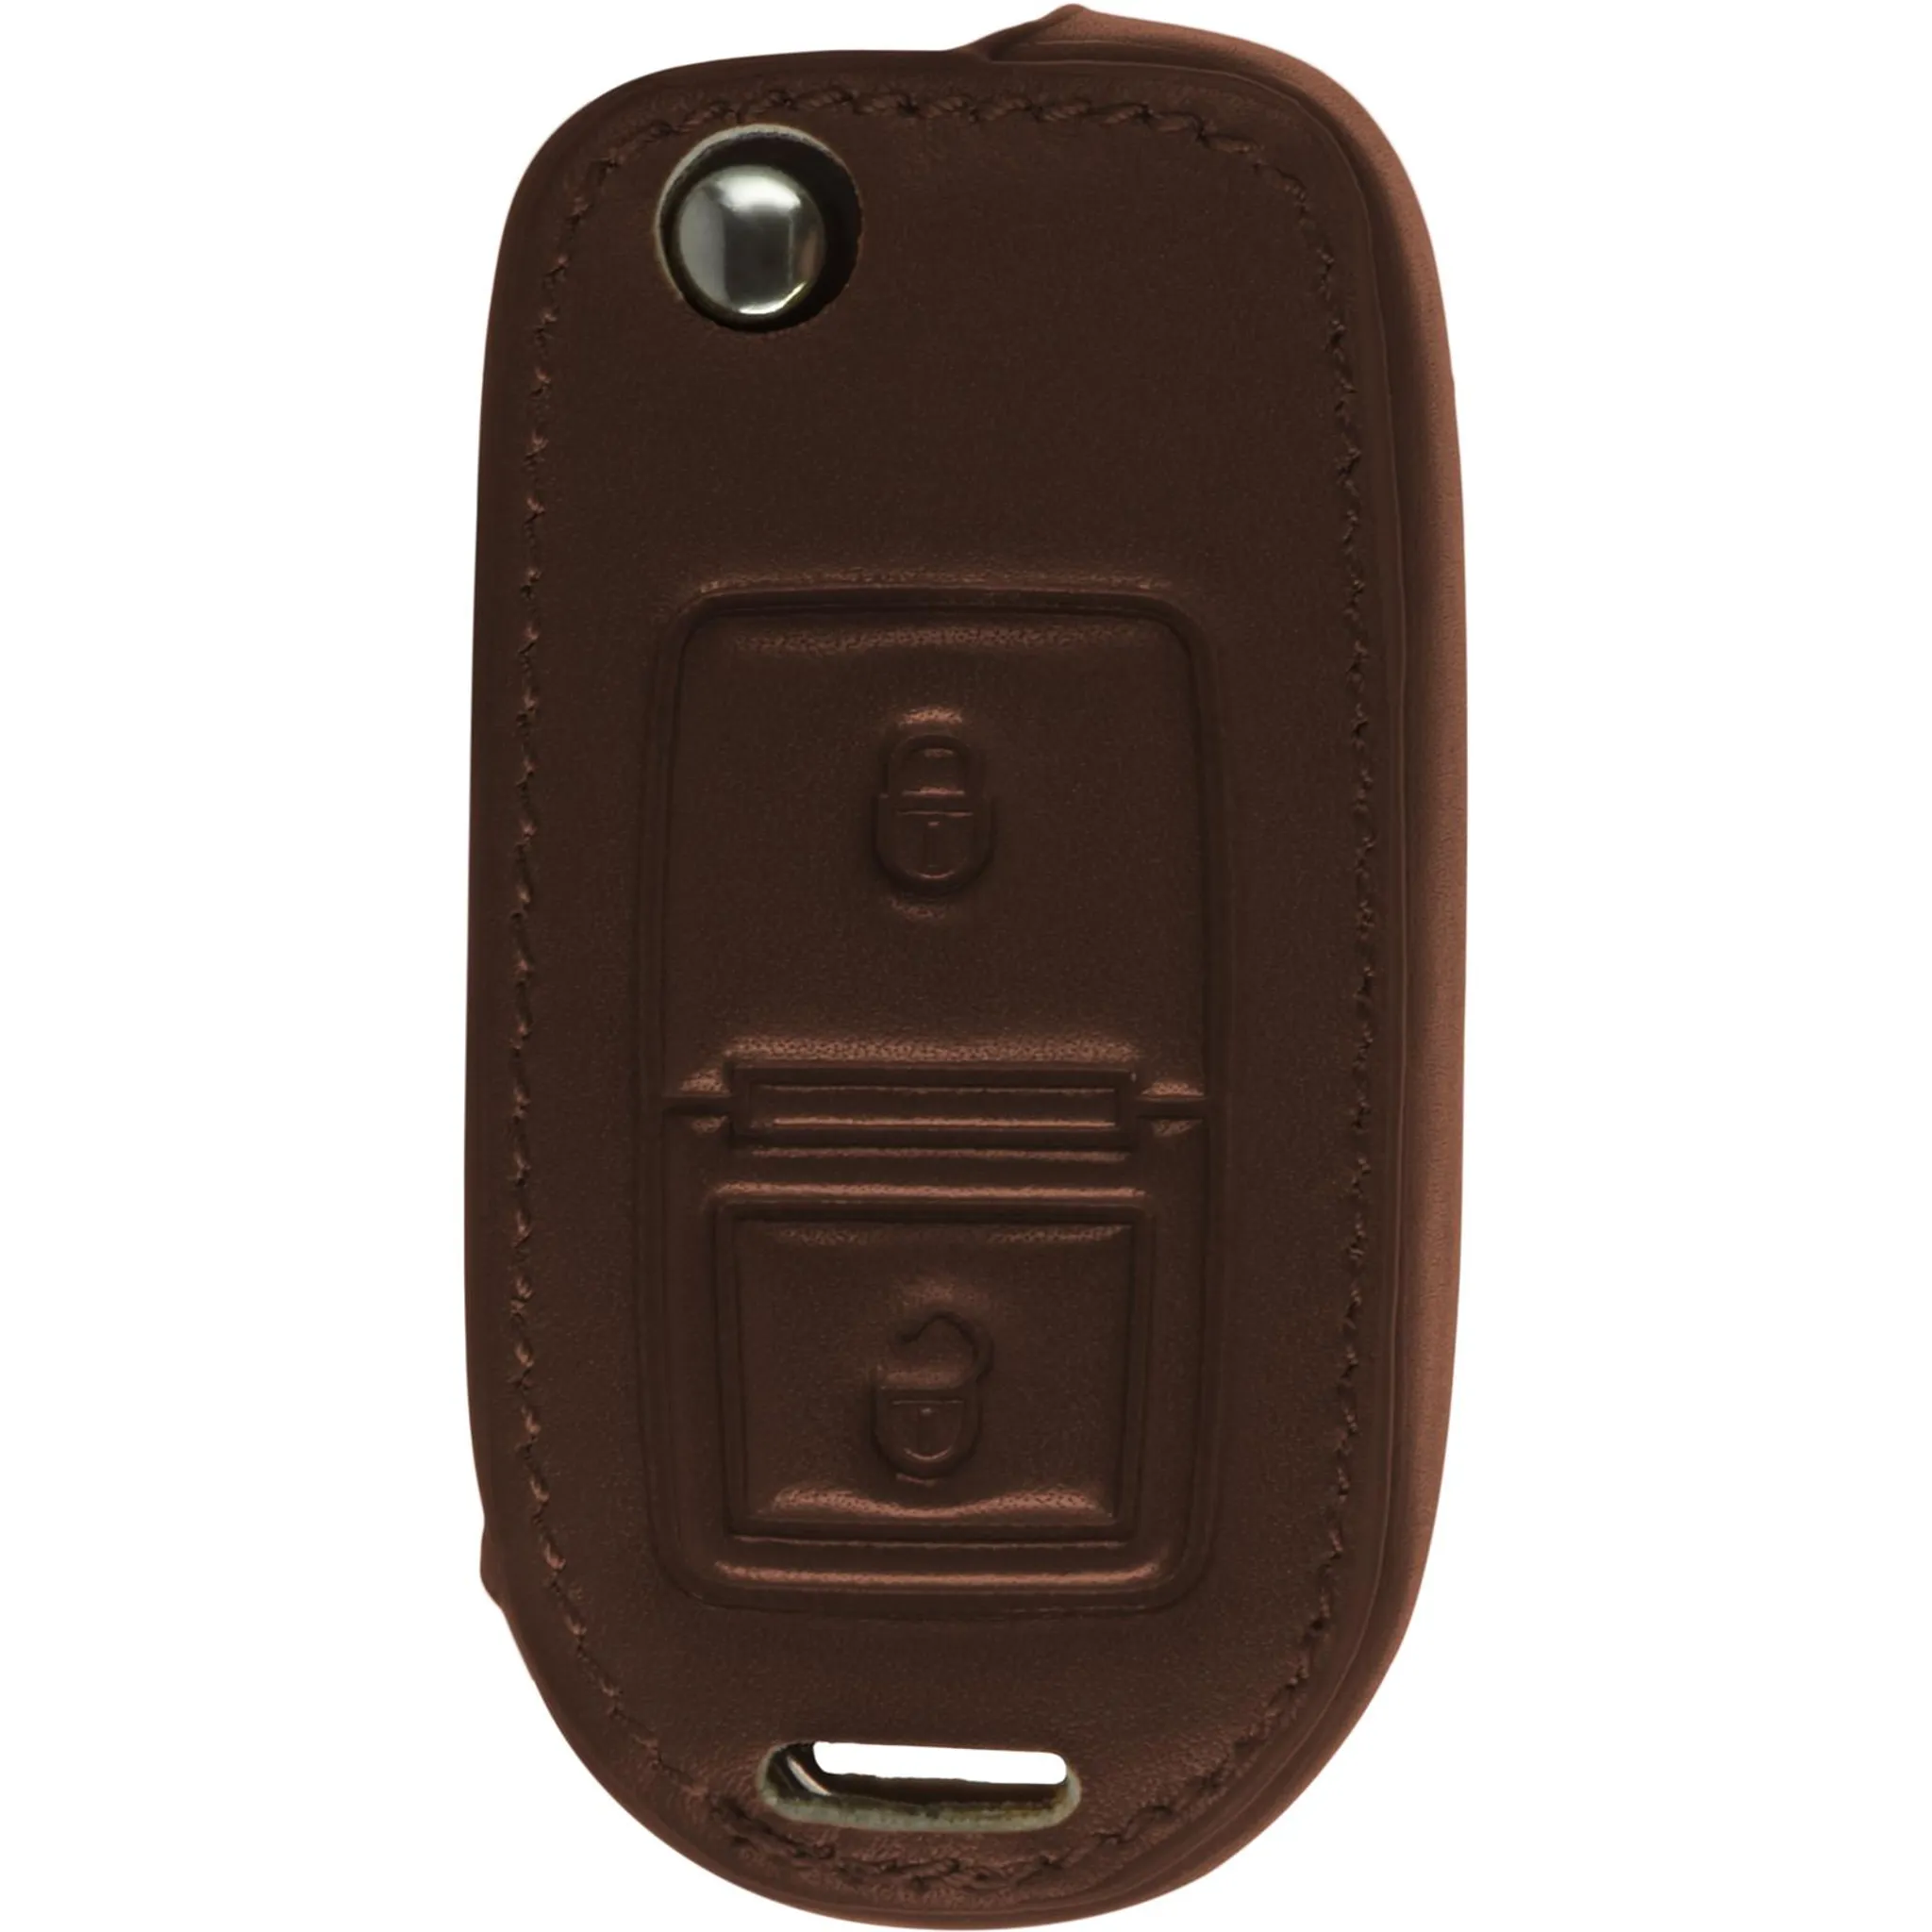 PhoneNatic Echtleder Classic Schlüssel Hülle kompatibel mit der VW 2-Tasten  Fernbedienung in braun Klappschlüssel 2-Key